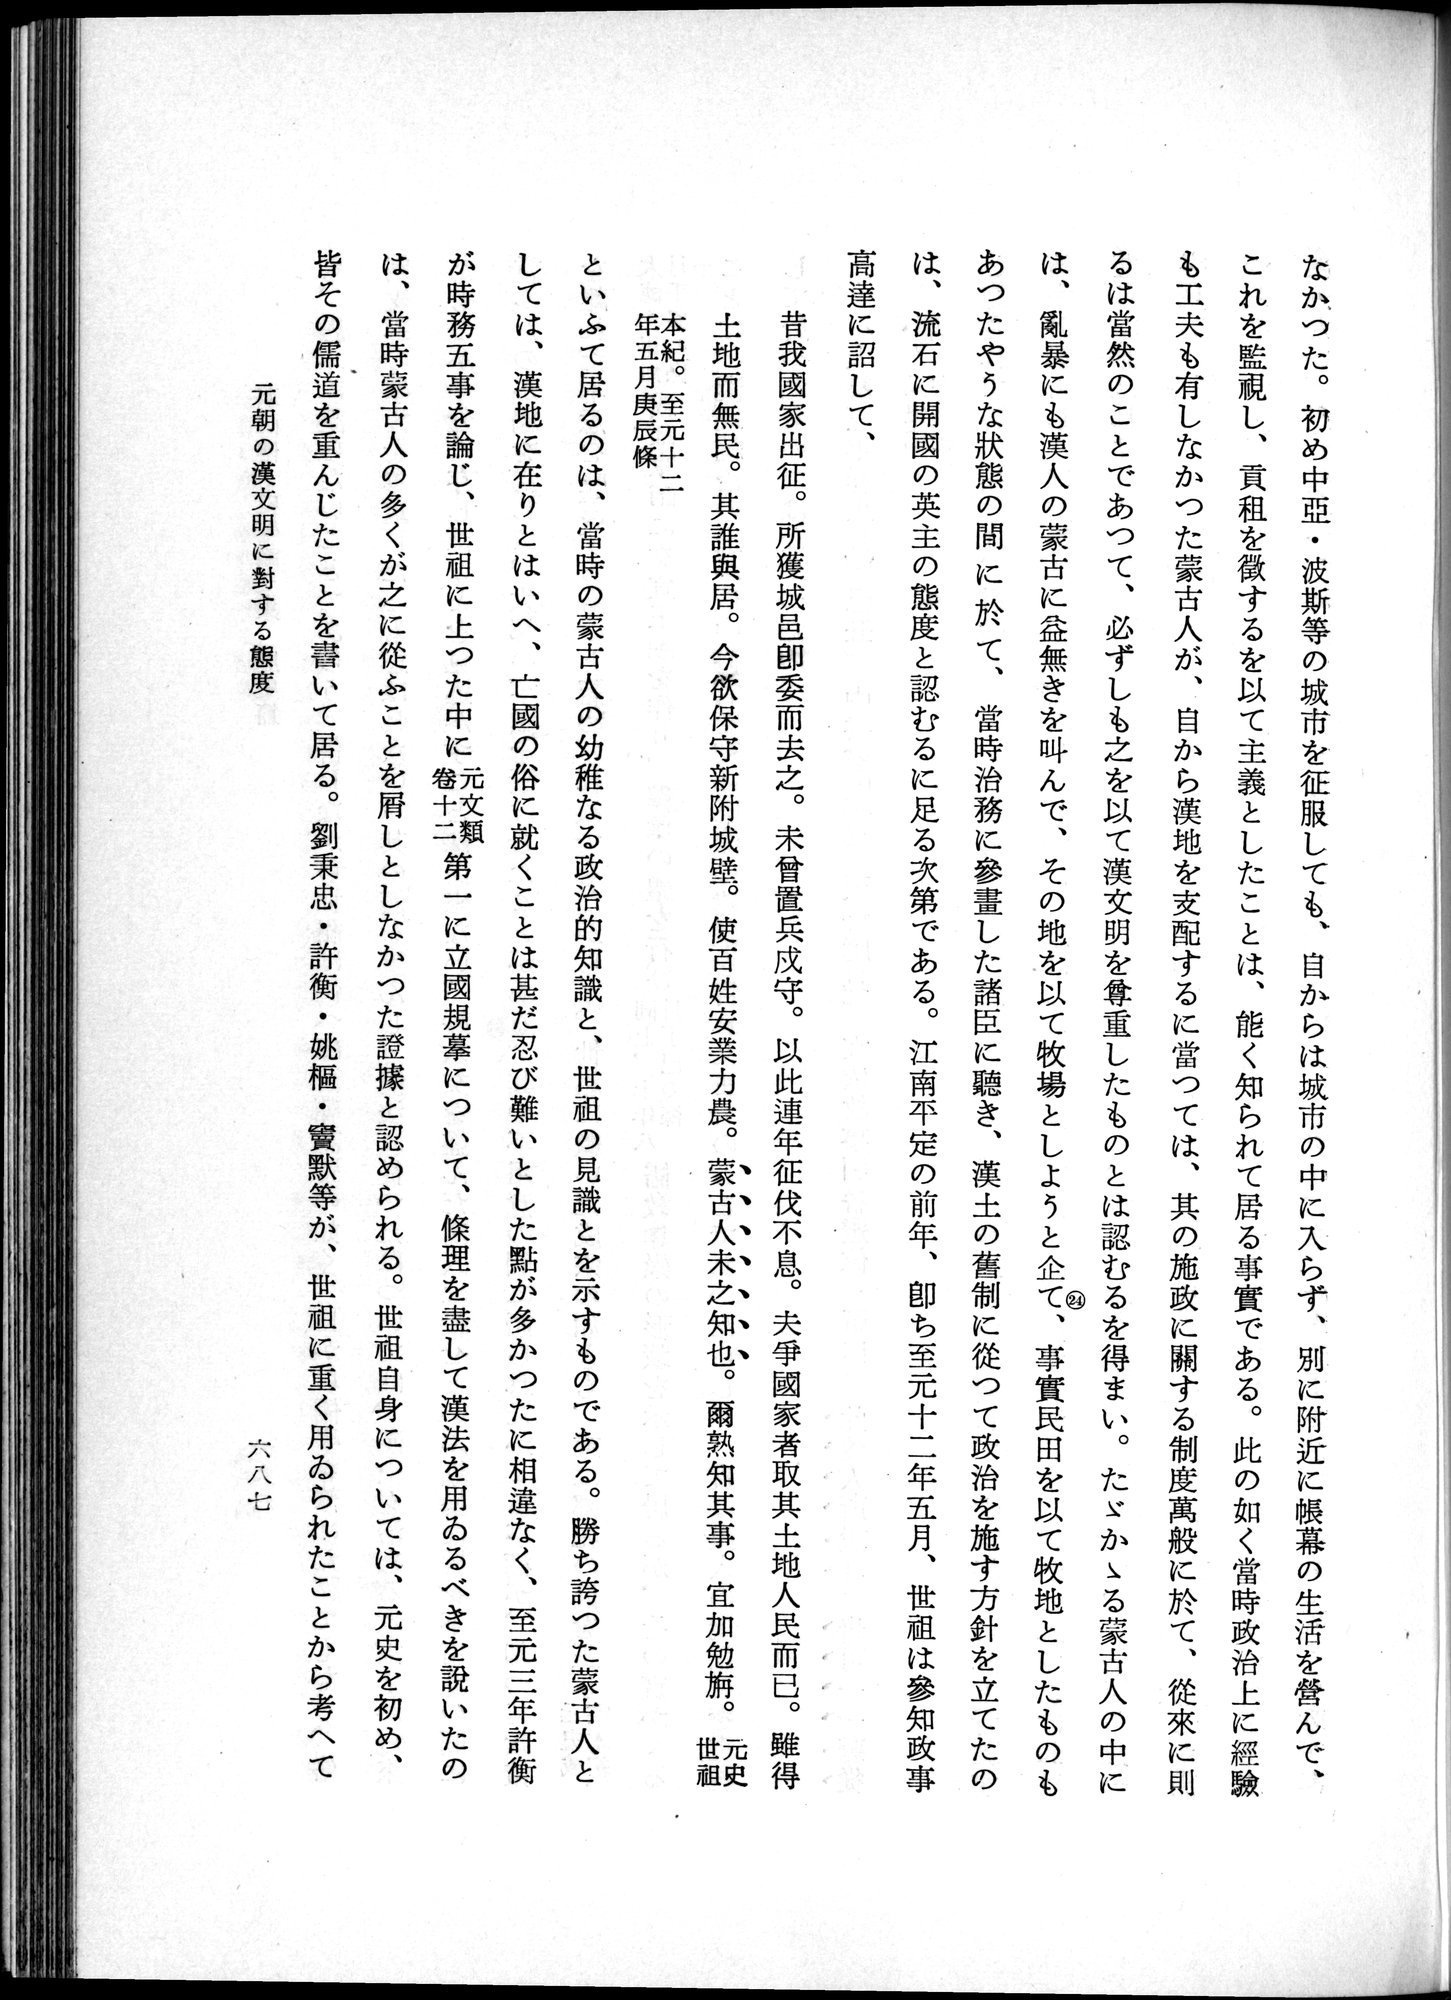 羽田博士史学論文集 : vol.1 / Page 725 (Grayscale High Resolution Image)